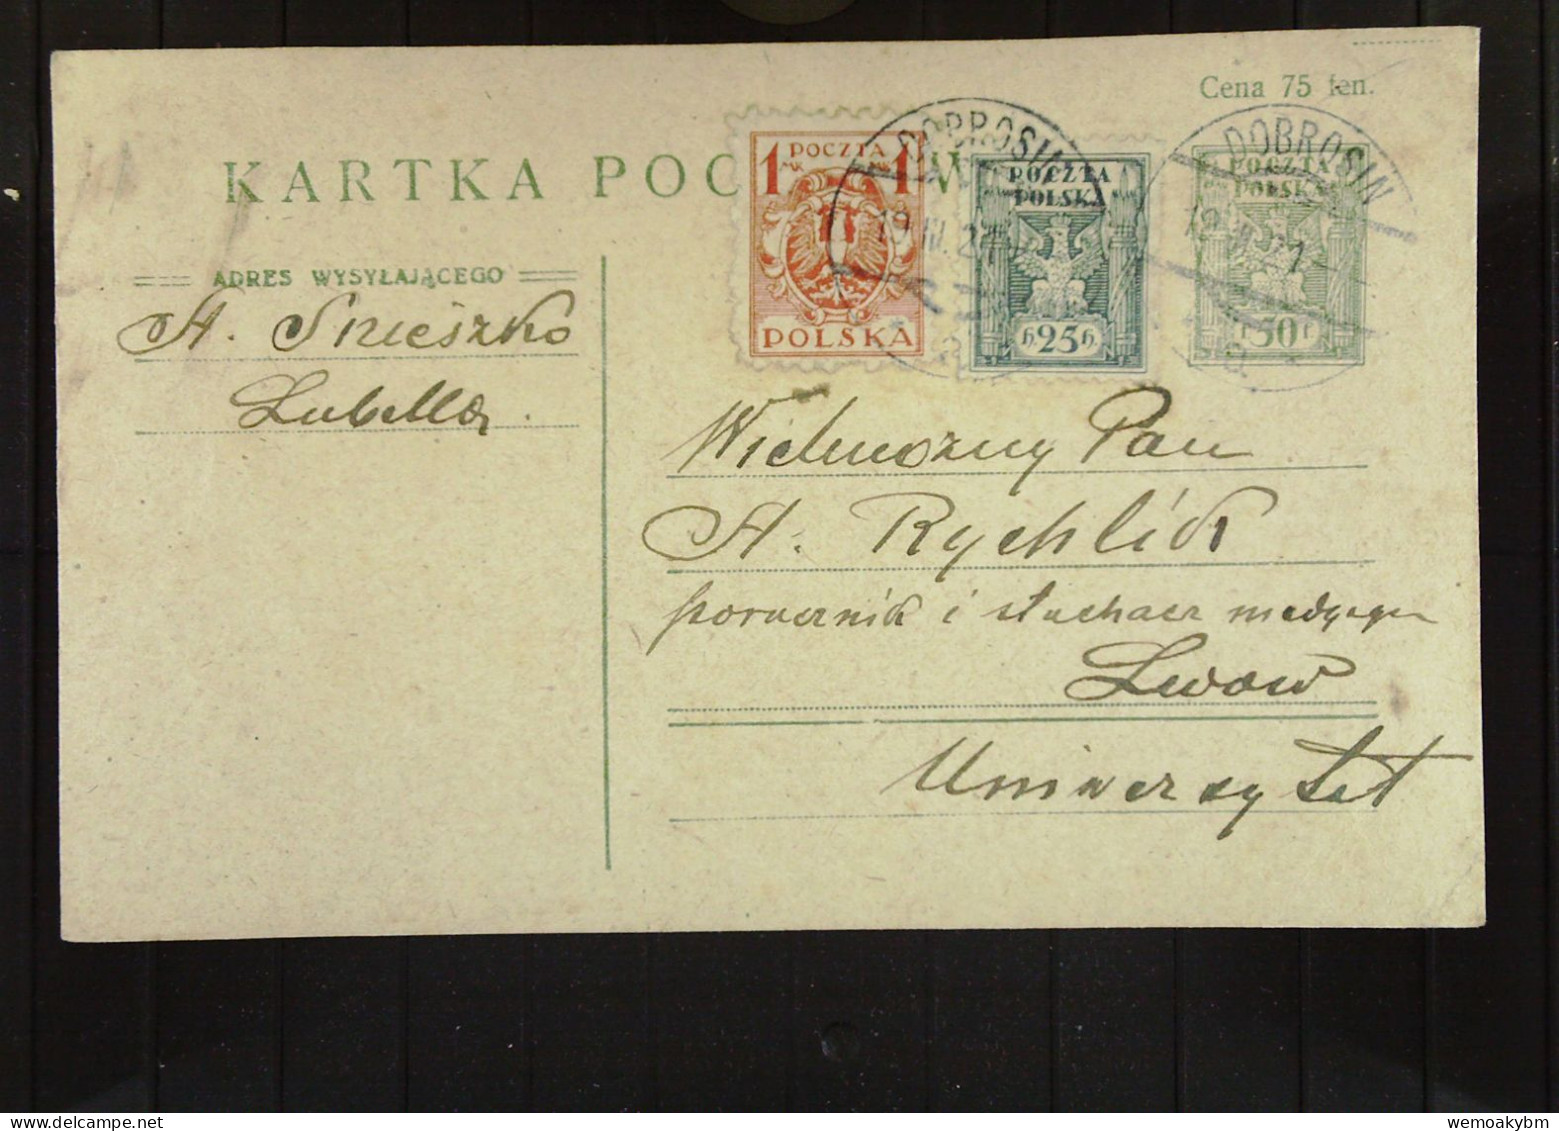 Polen: Ganzsachen-Postkarte Mit POLSKA 50 F Und Zusatz-Marken 25 H Und 1 Mk Vom 19.3.1921 Aus DOBROSIN Nach Lwow - Briefe U. Dokumente